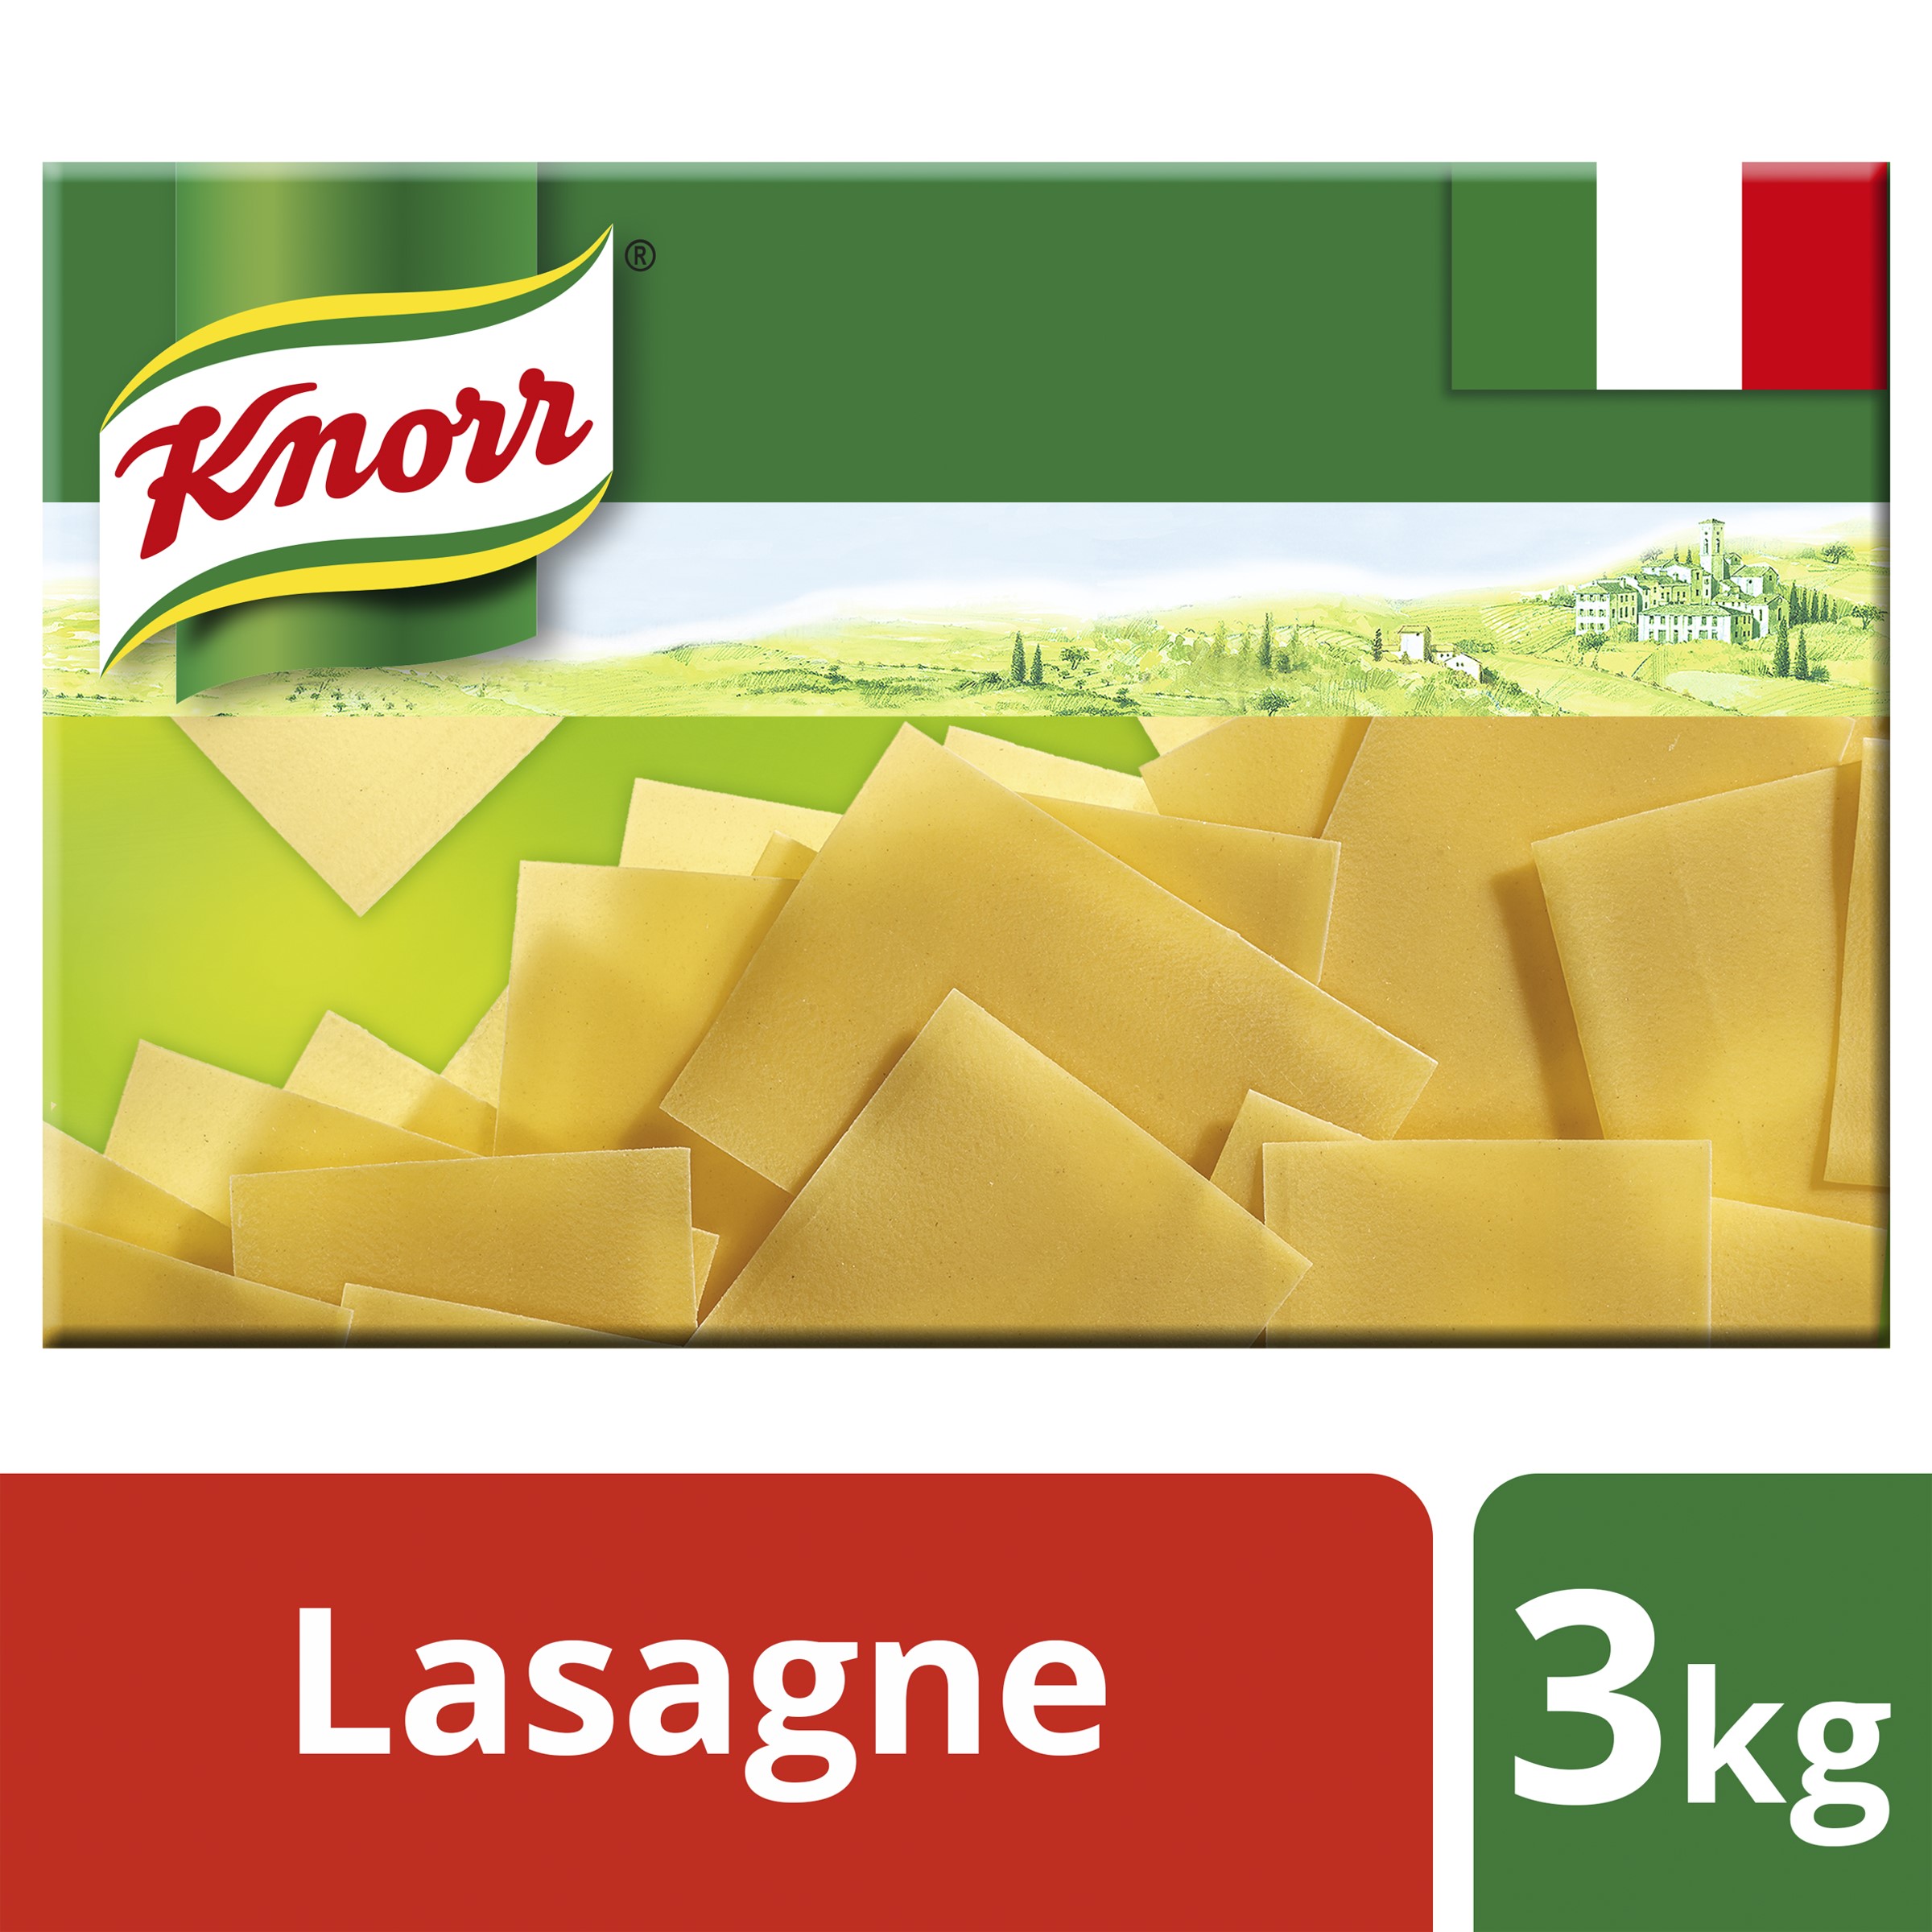 Knorr Lasagne Sheets 3kg